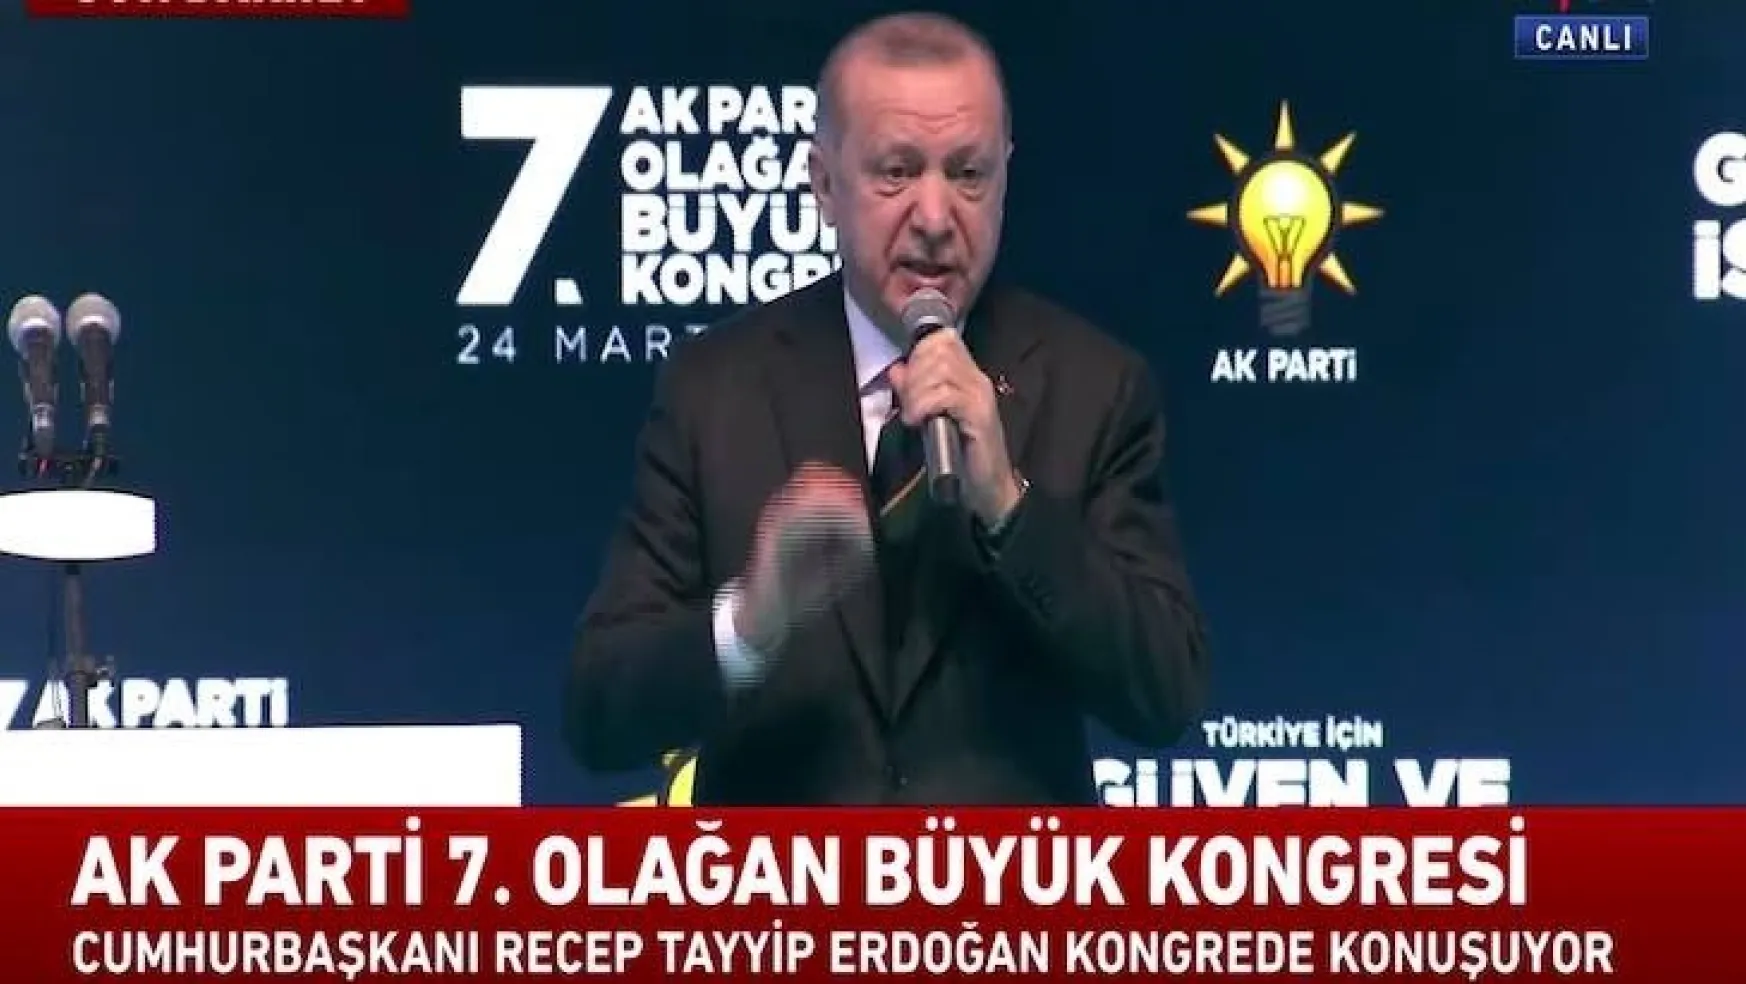 CHP: Erdoğan'ınki manifesto değil fiyasko çünkü 'esnaf' yok!